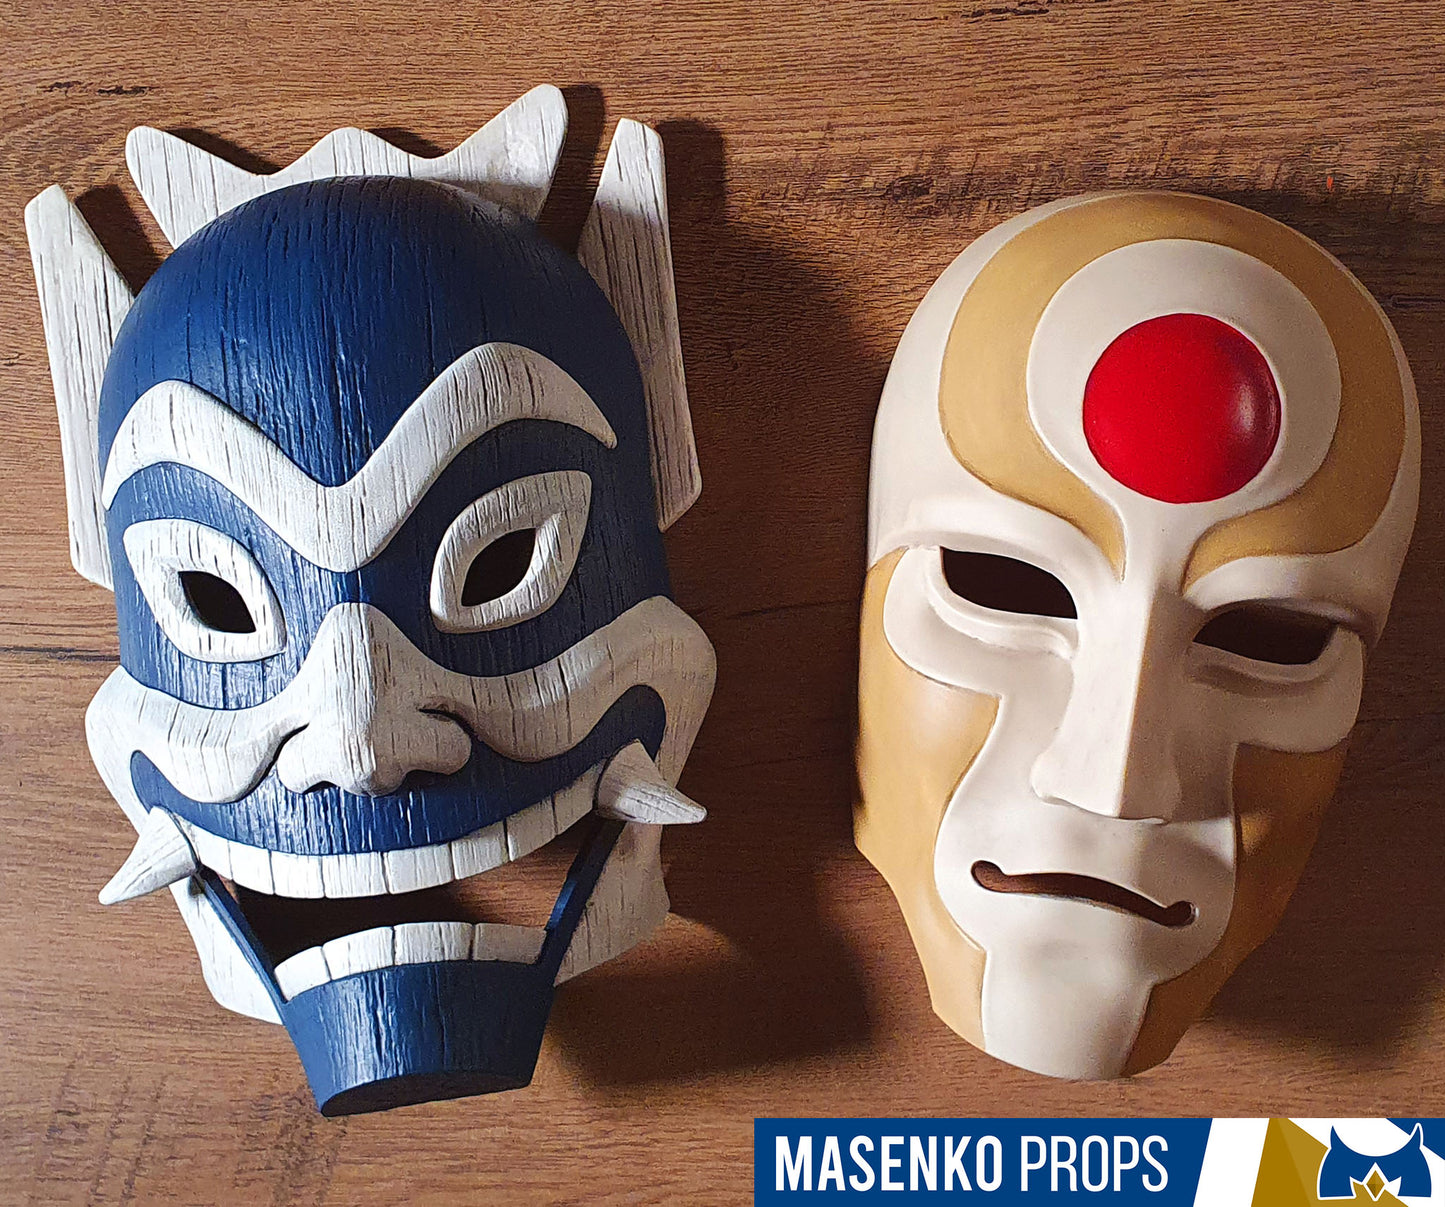 Full-Sized Avatar Blue Spirit Mask Replica